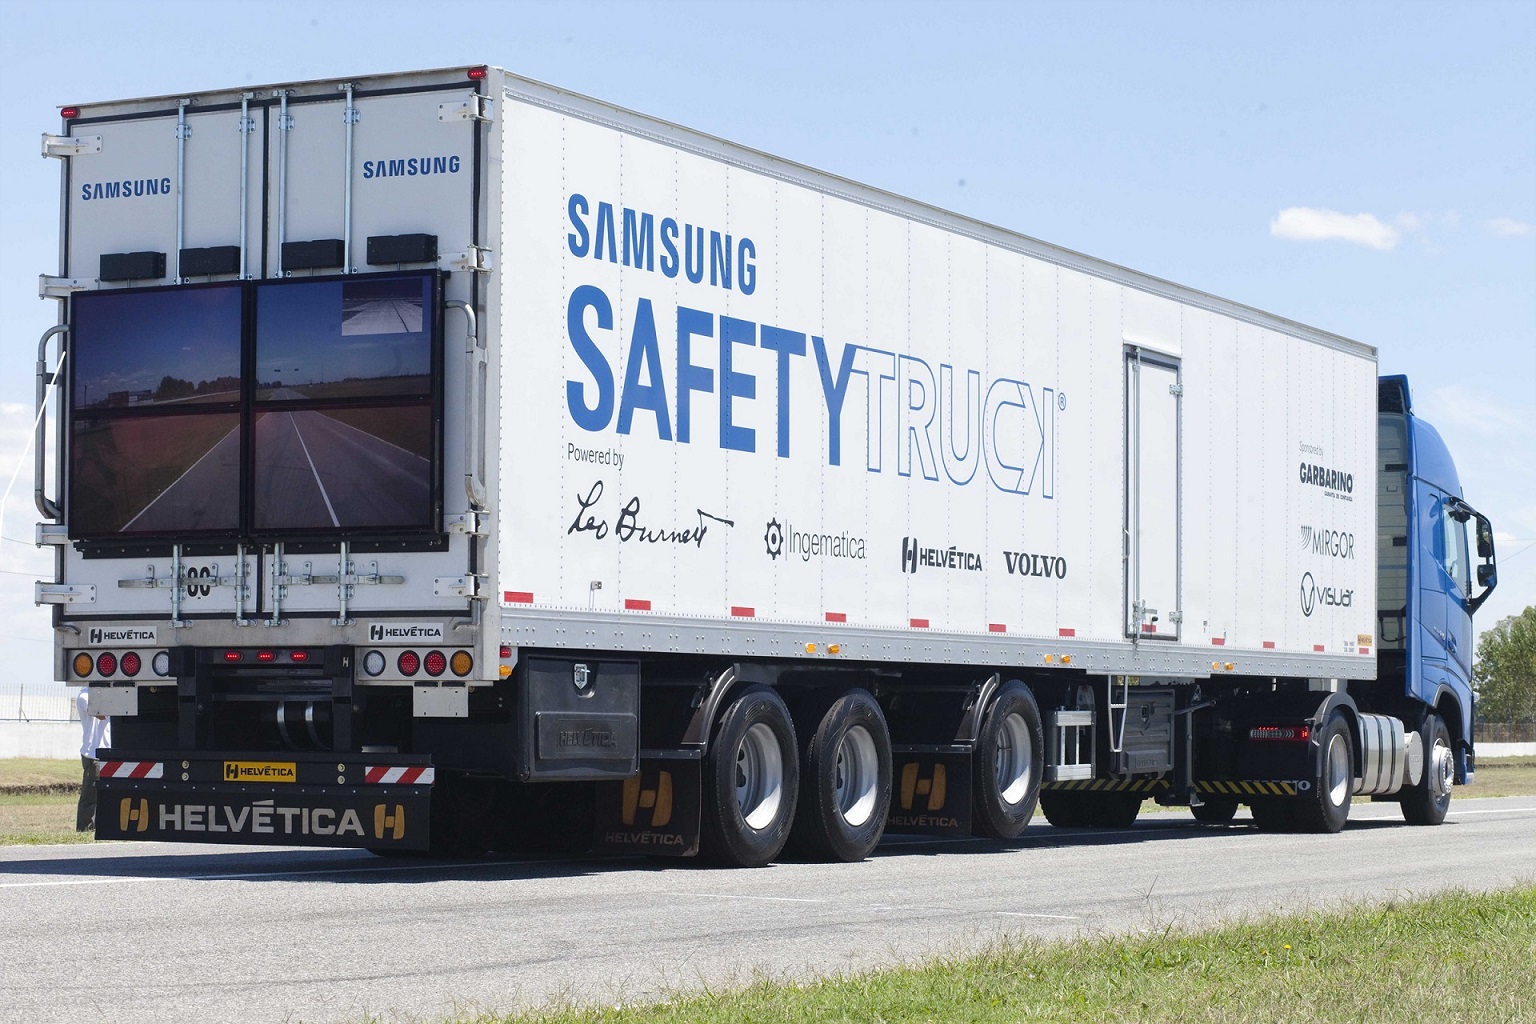 samsung_safety_truck_01.jpg